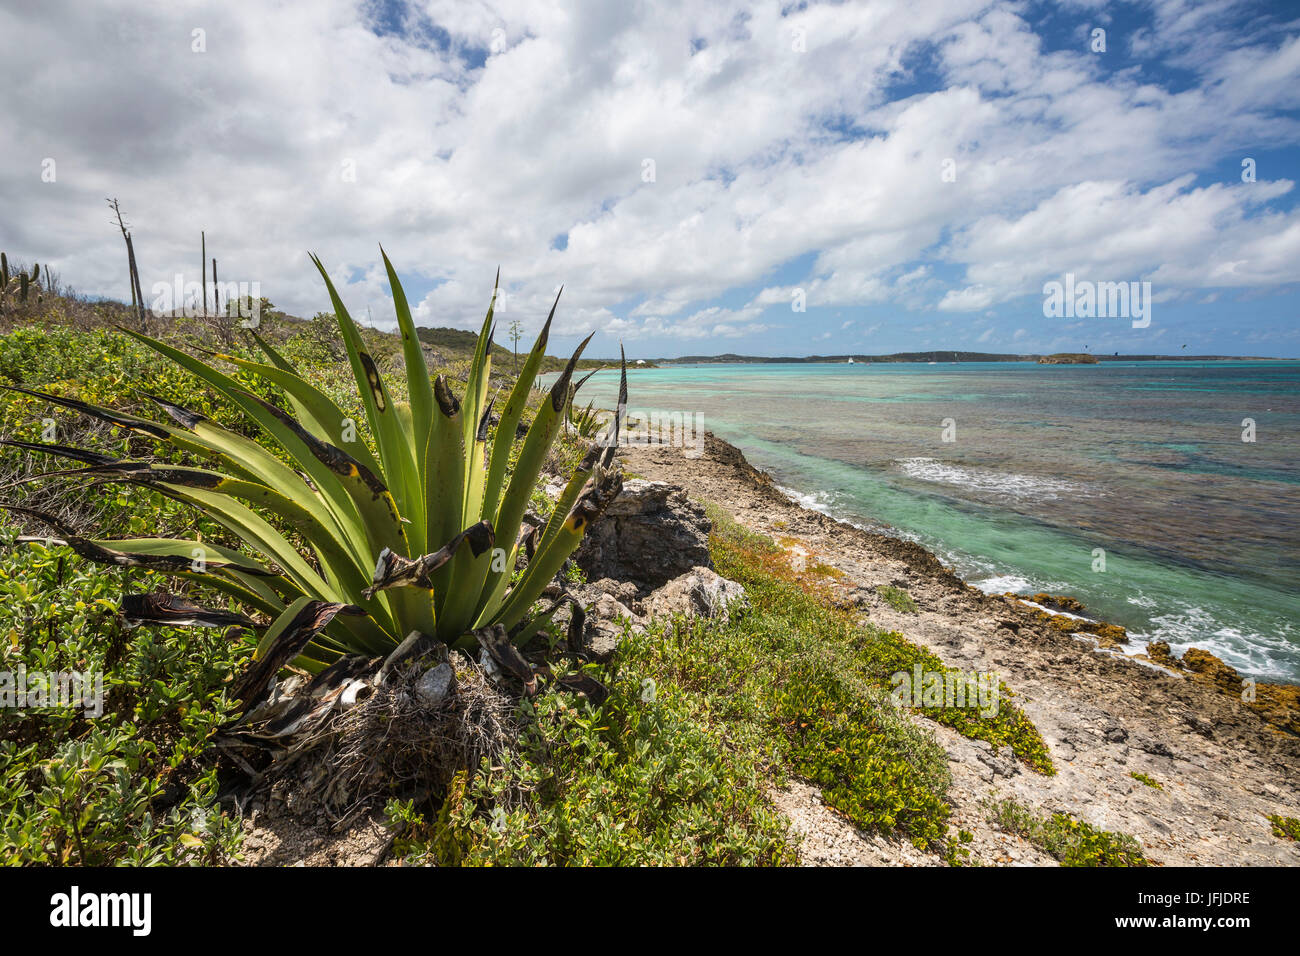 Las plantas verdes y el agua color turquesa del Mar Caribe de Isla Verde Isla de sotavento de Antigua y Barbuda Antillas Foto de stock